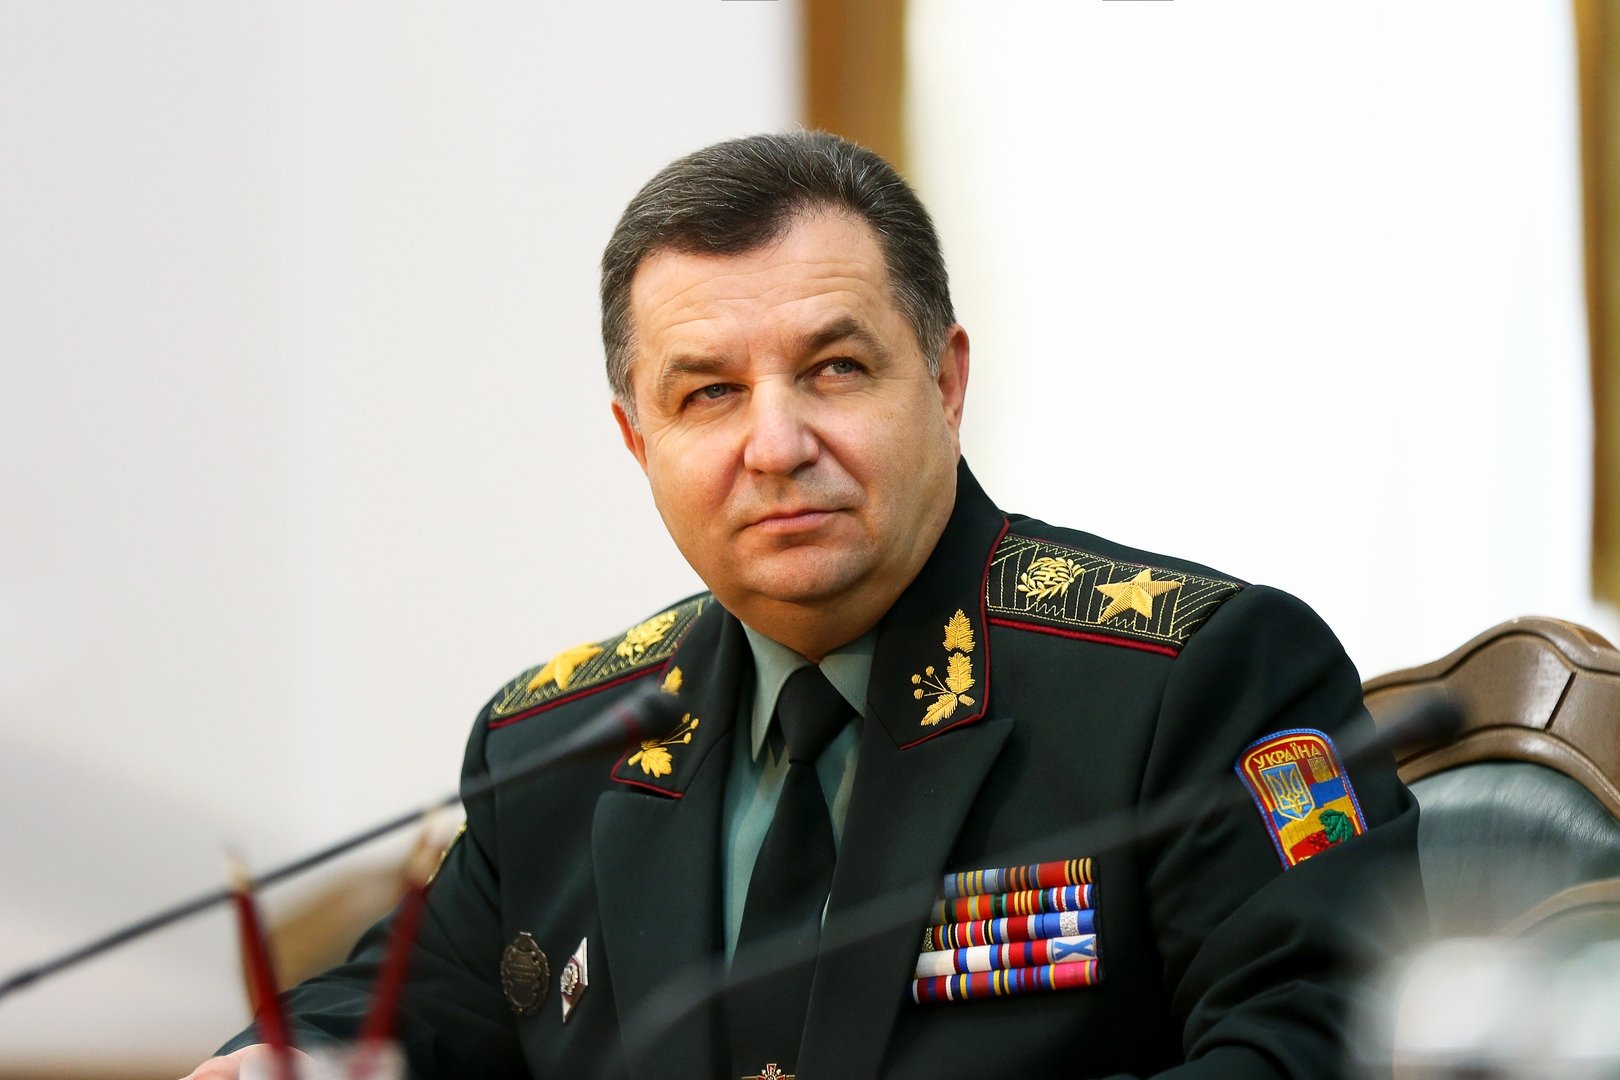 Министр обороны Полторак подал в отставку